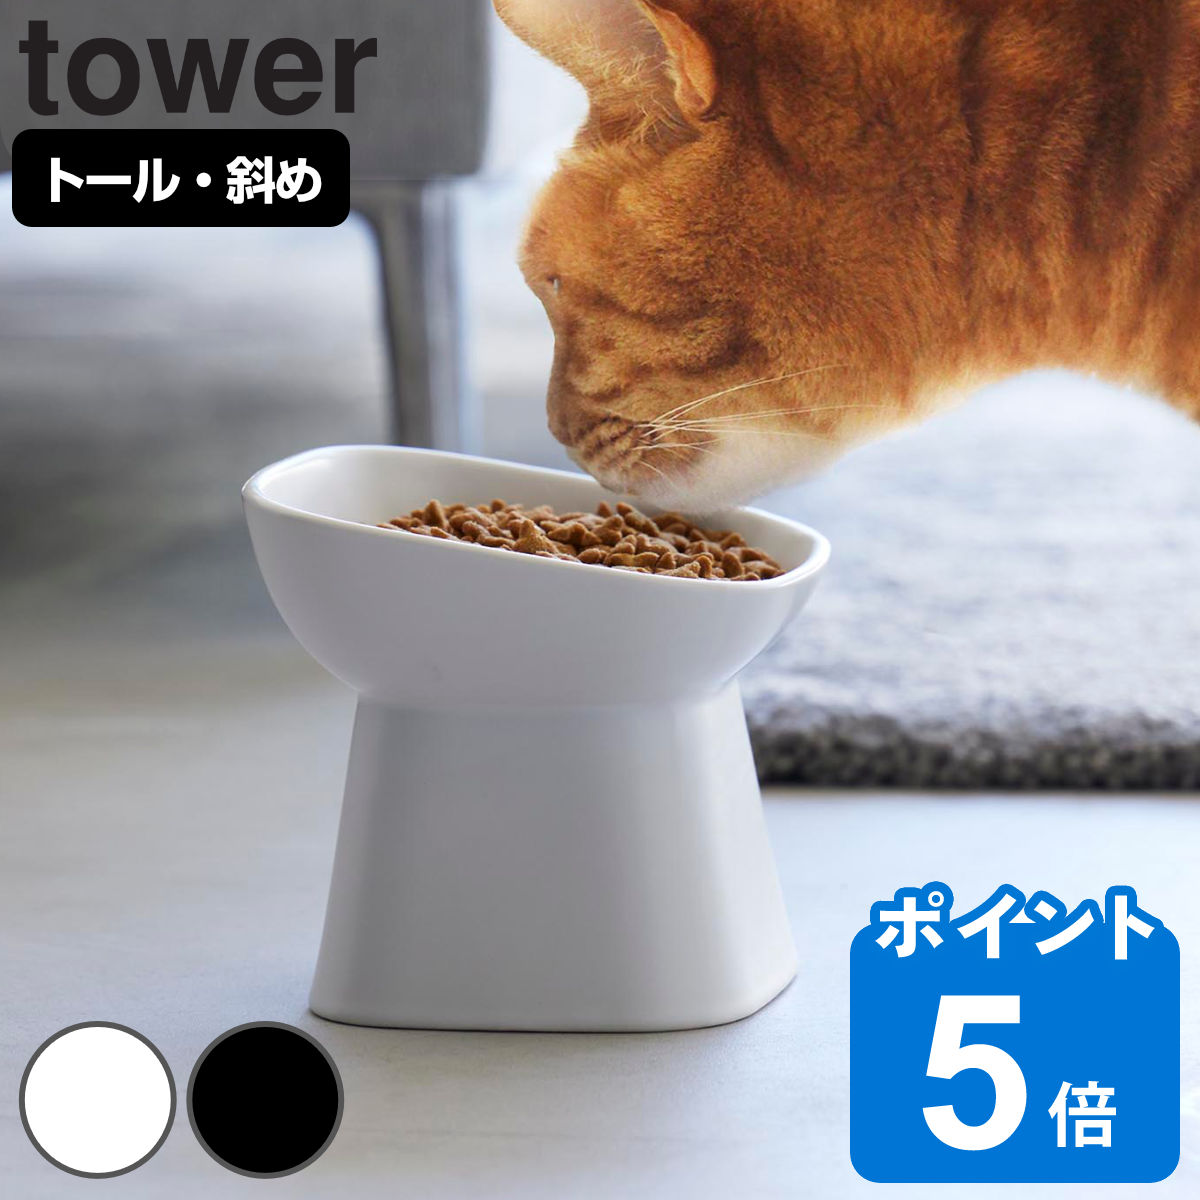 山崎実業 tower 食べやすい高さ陶器ペットフードボウル 